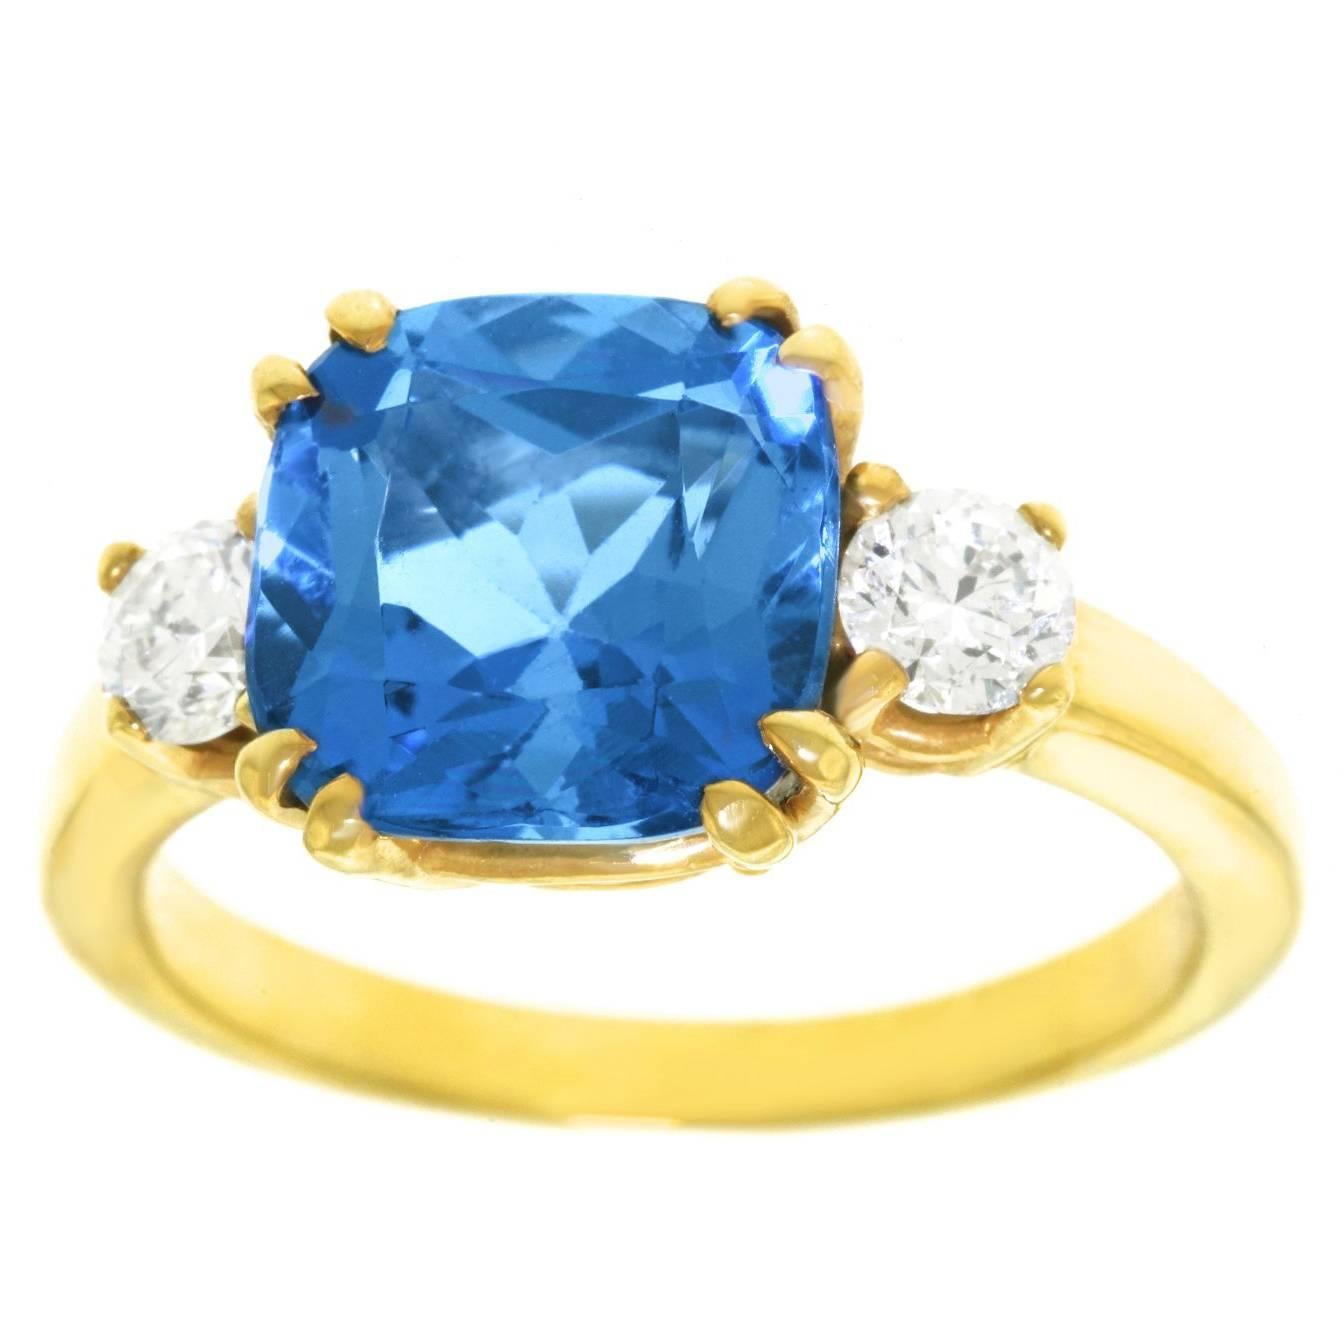 Spectacular Aquamarine Diamond Gold Ring